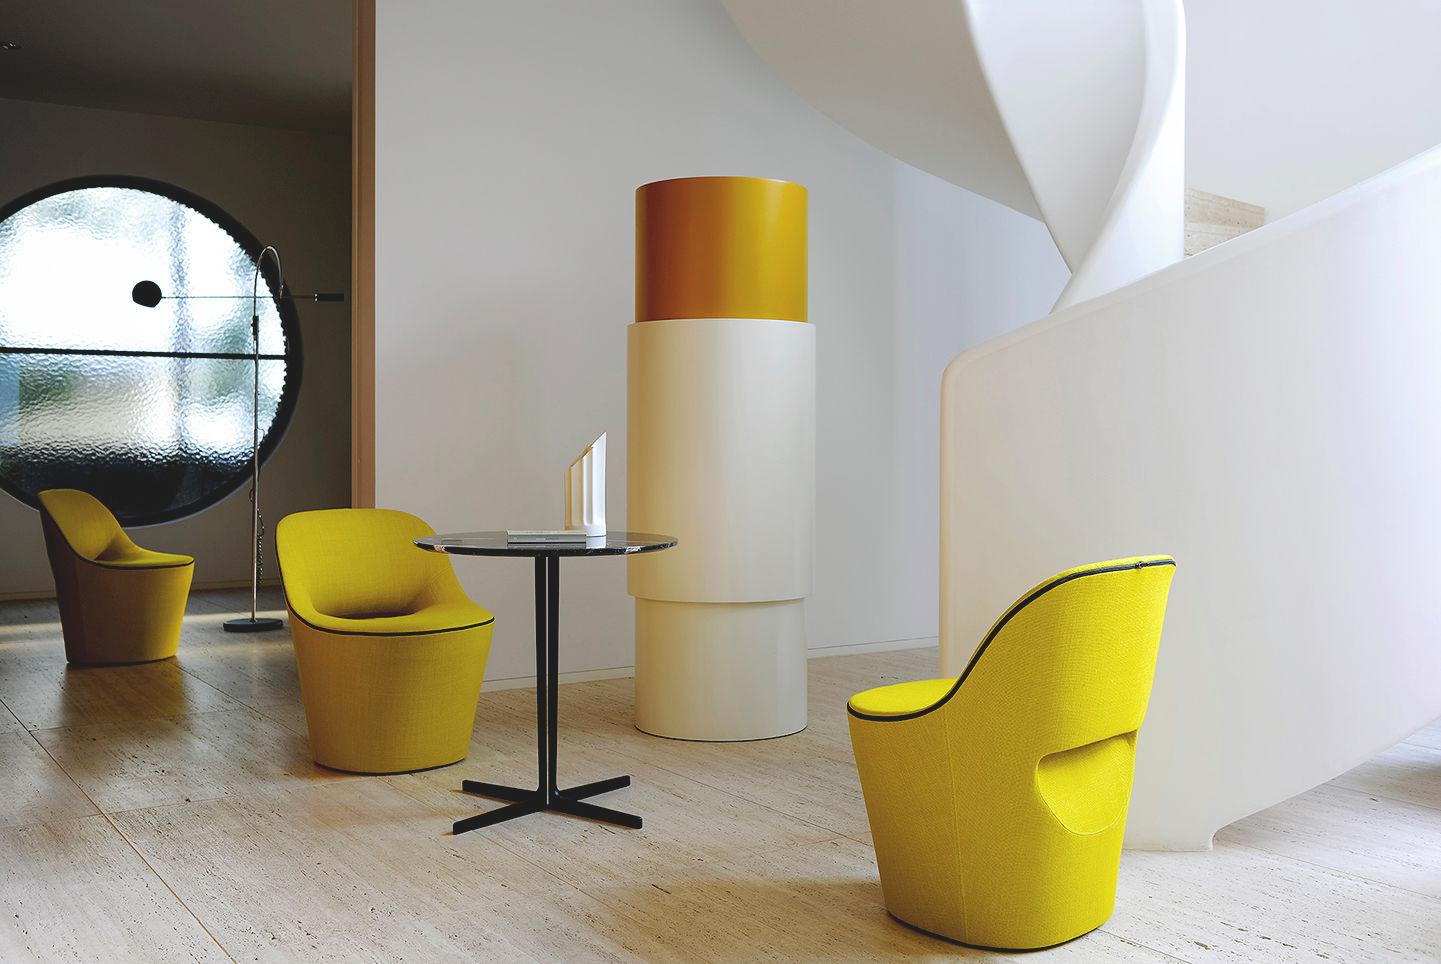 Créée par le studio de design britannique PearsonLloyd, Eddy est une chaise au charme audacieux. Ce fauteuil compact et élégant présente des lignes distinctives et offre de nombreuses possibilités de personnalisation dans le choix du revêtement. Un